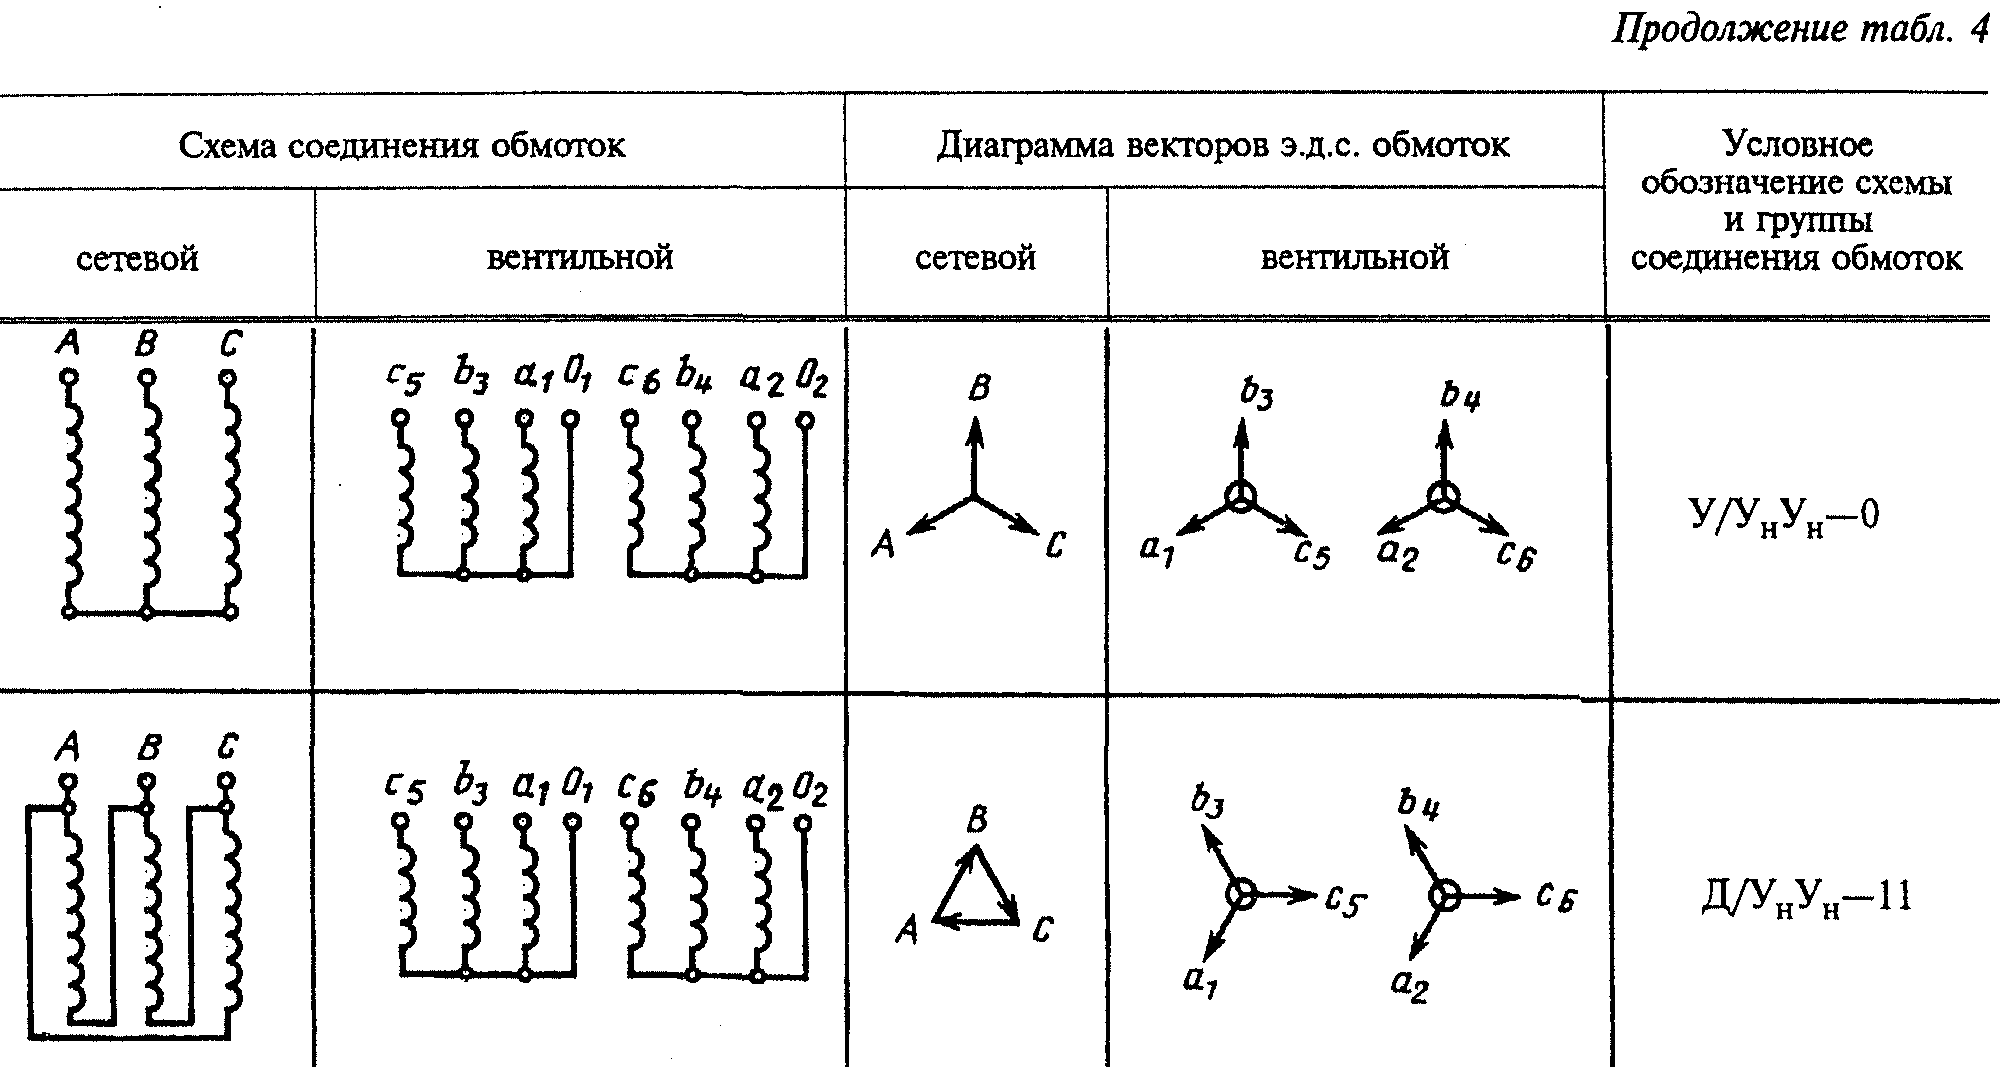 Группы соединений воды. Схема соединения обмоток трансформатора 1/1-0. 1/1-0 Группа соединения. Обозначения схемы соединения обмоток. Схема соединения обмоток трансформатора у/Zн-11.